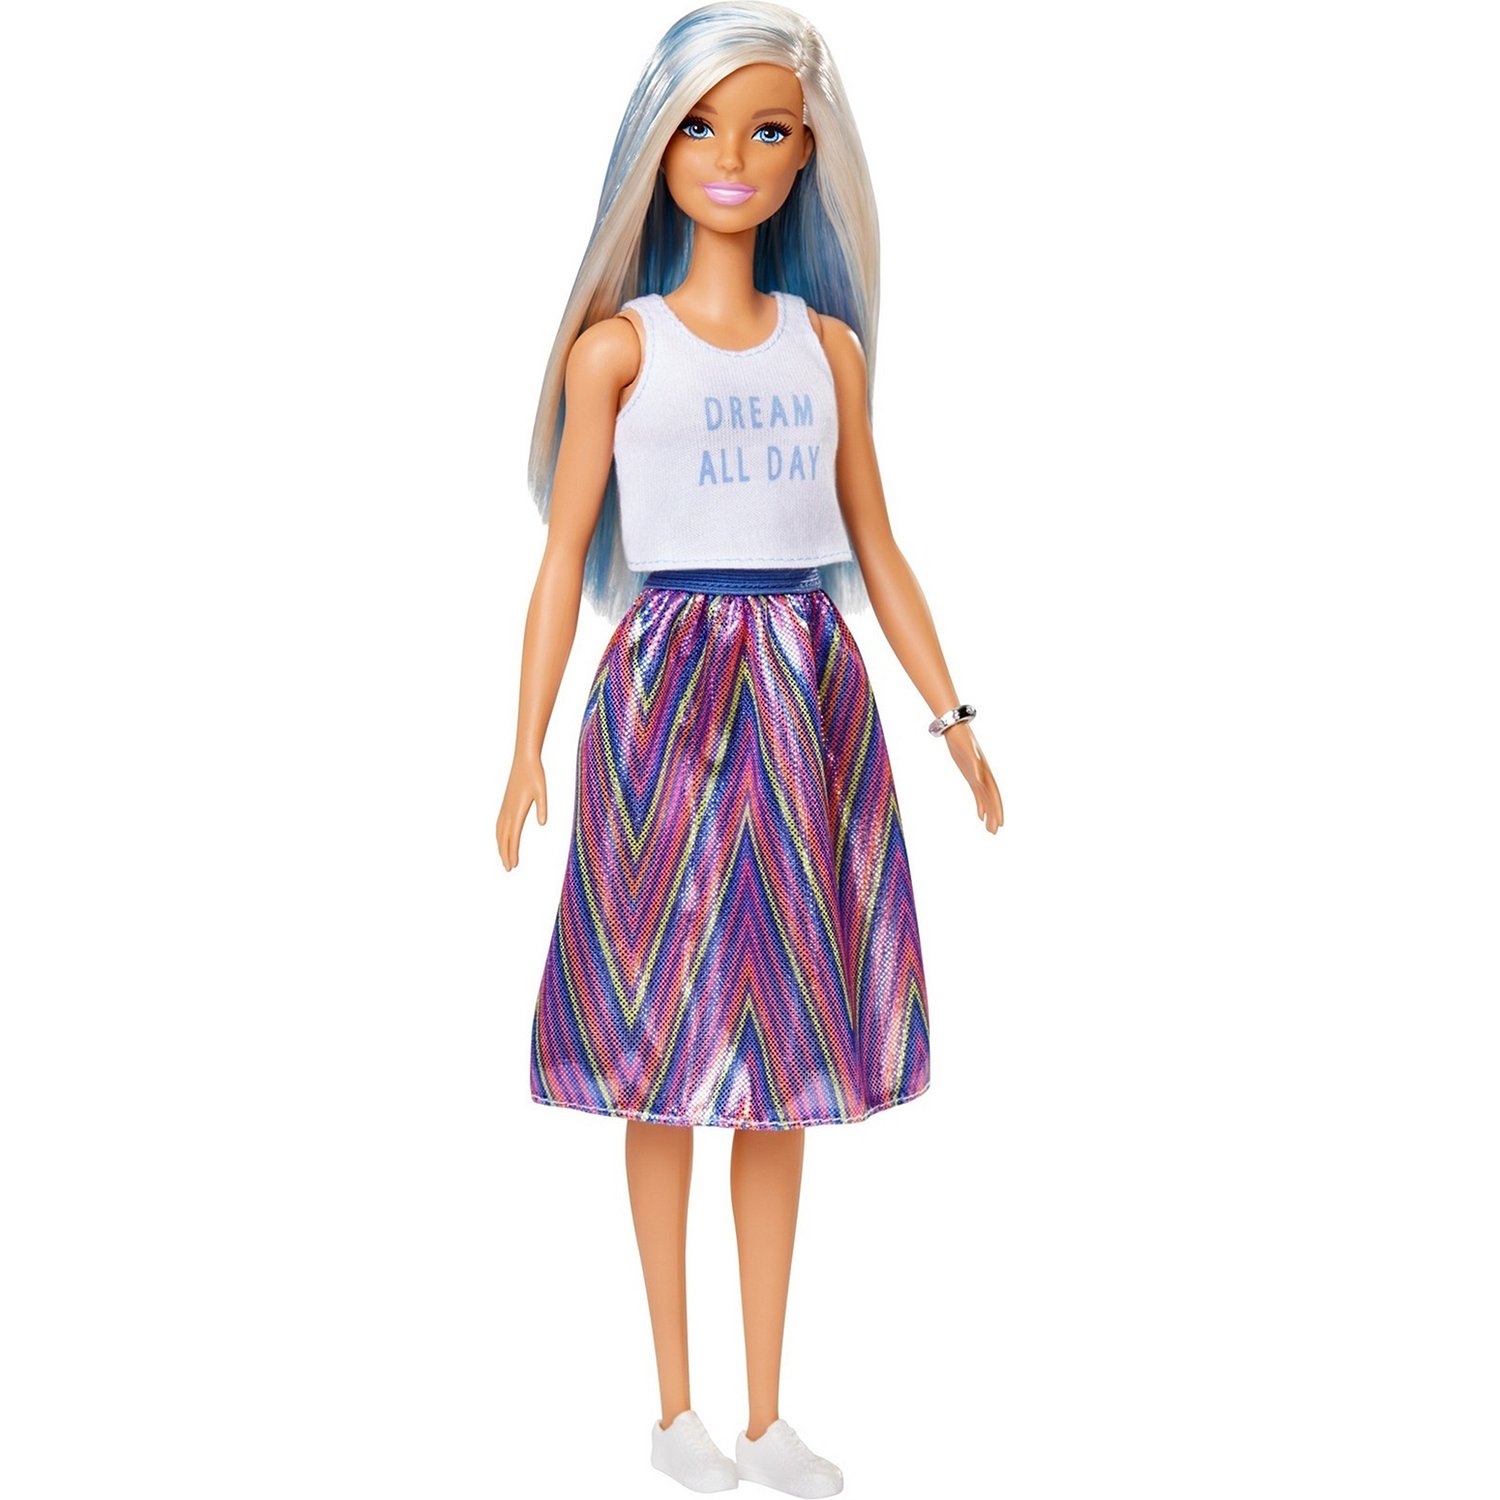 Кукла Barbie Игра с модой Мечтательное настроение, FXL53